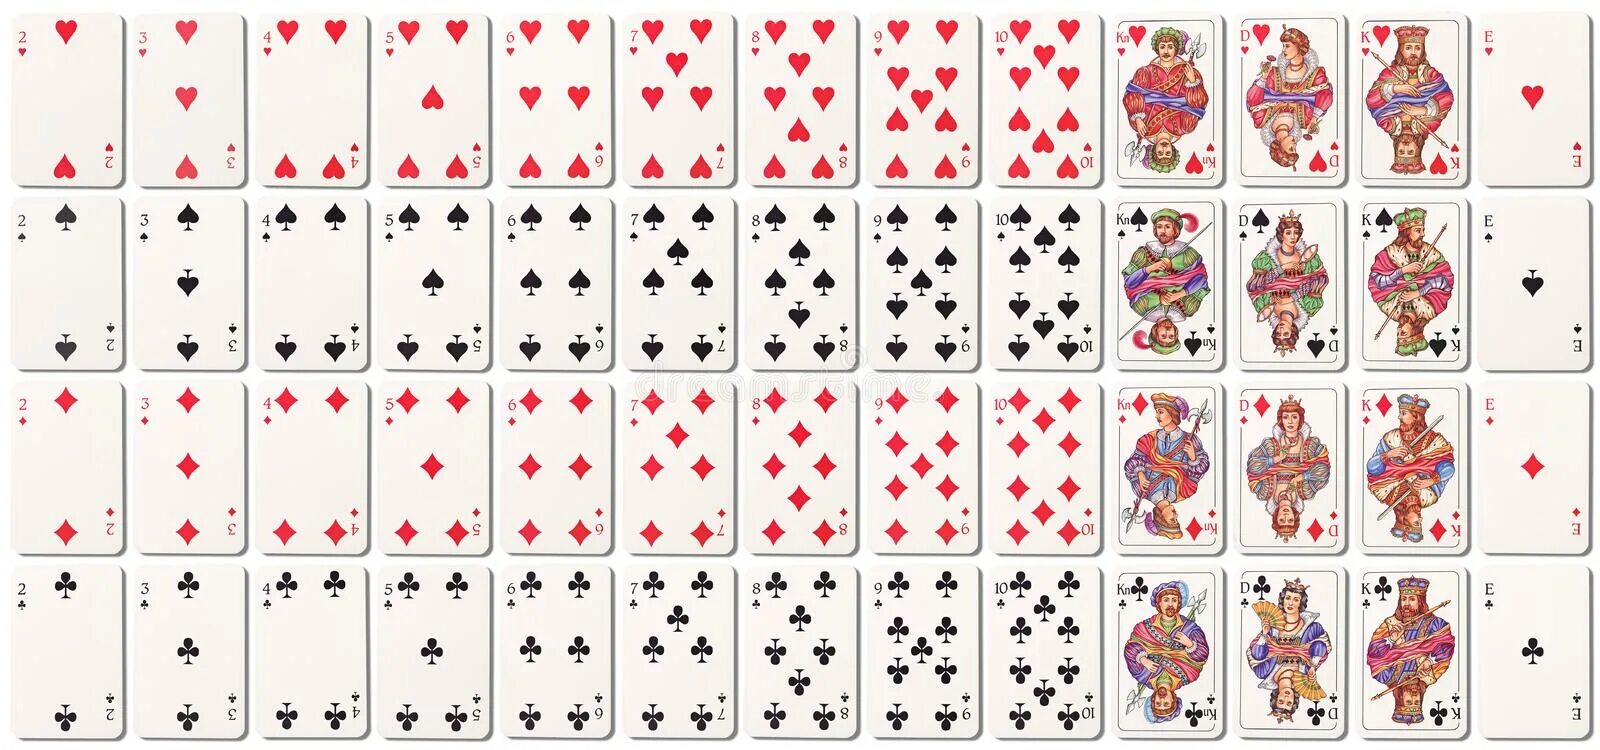 Включи картов. Маленькие игральные карты. Игральные карты вся колода. Карты колода 36 карт. Порядок карт в колоде.